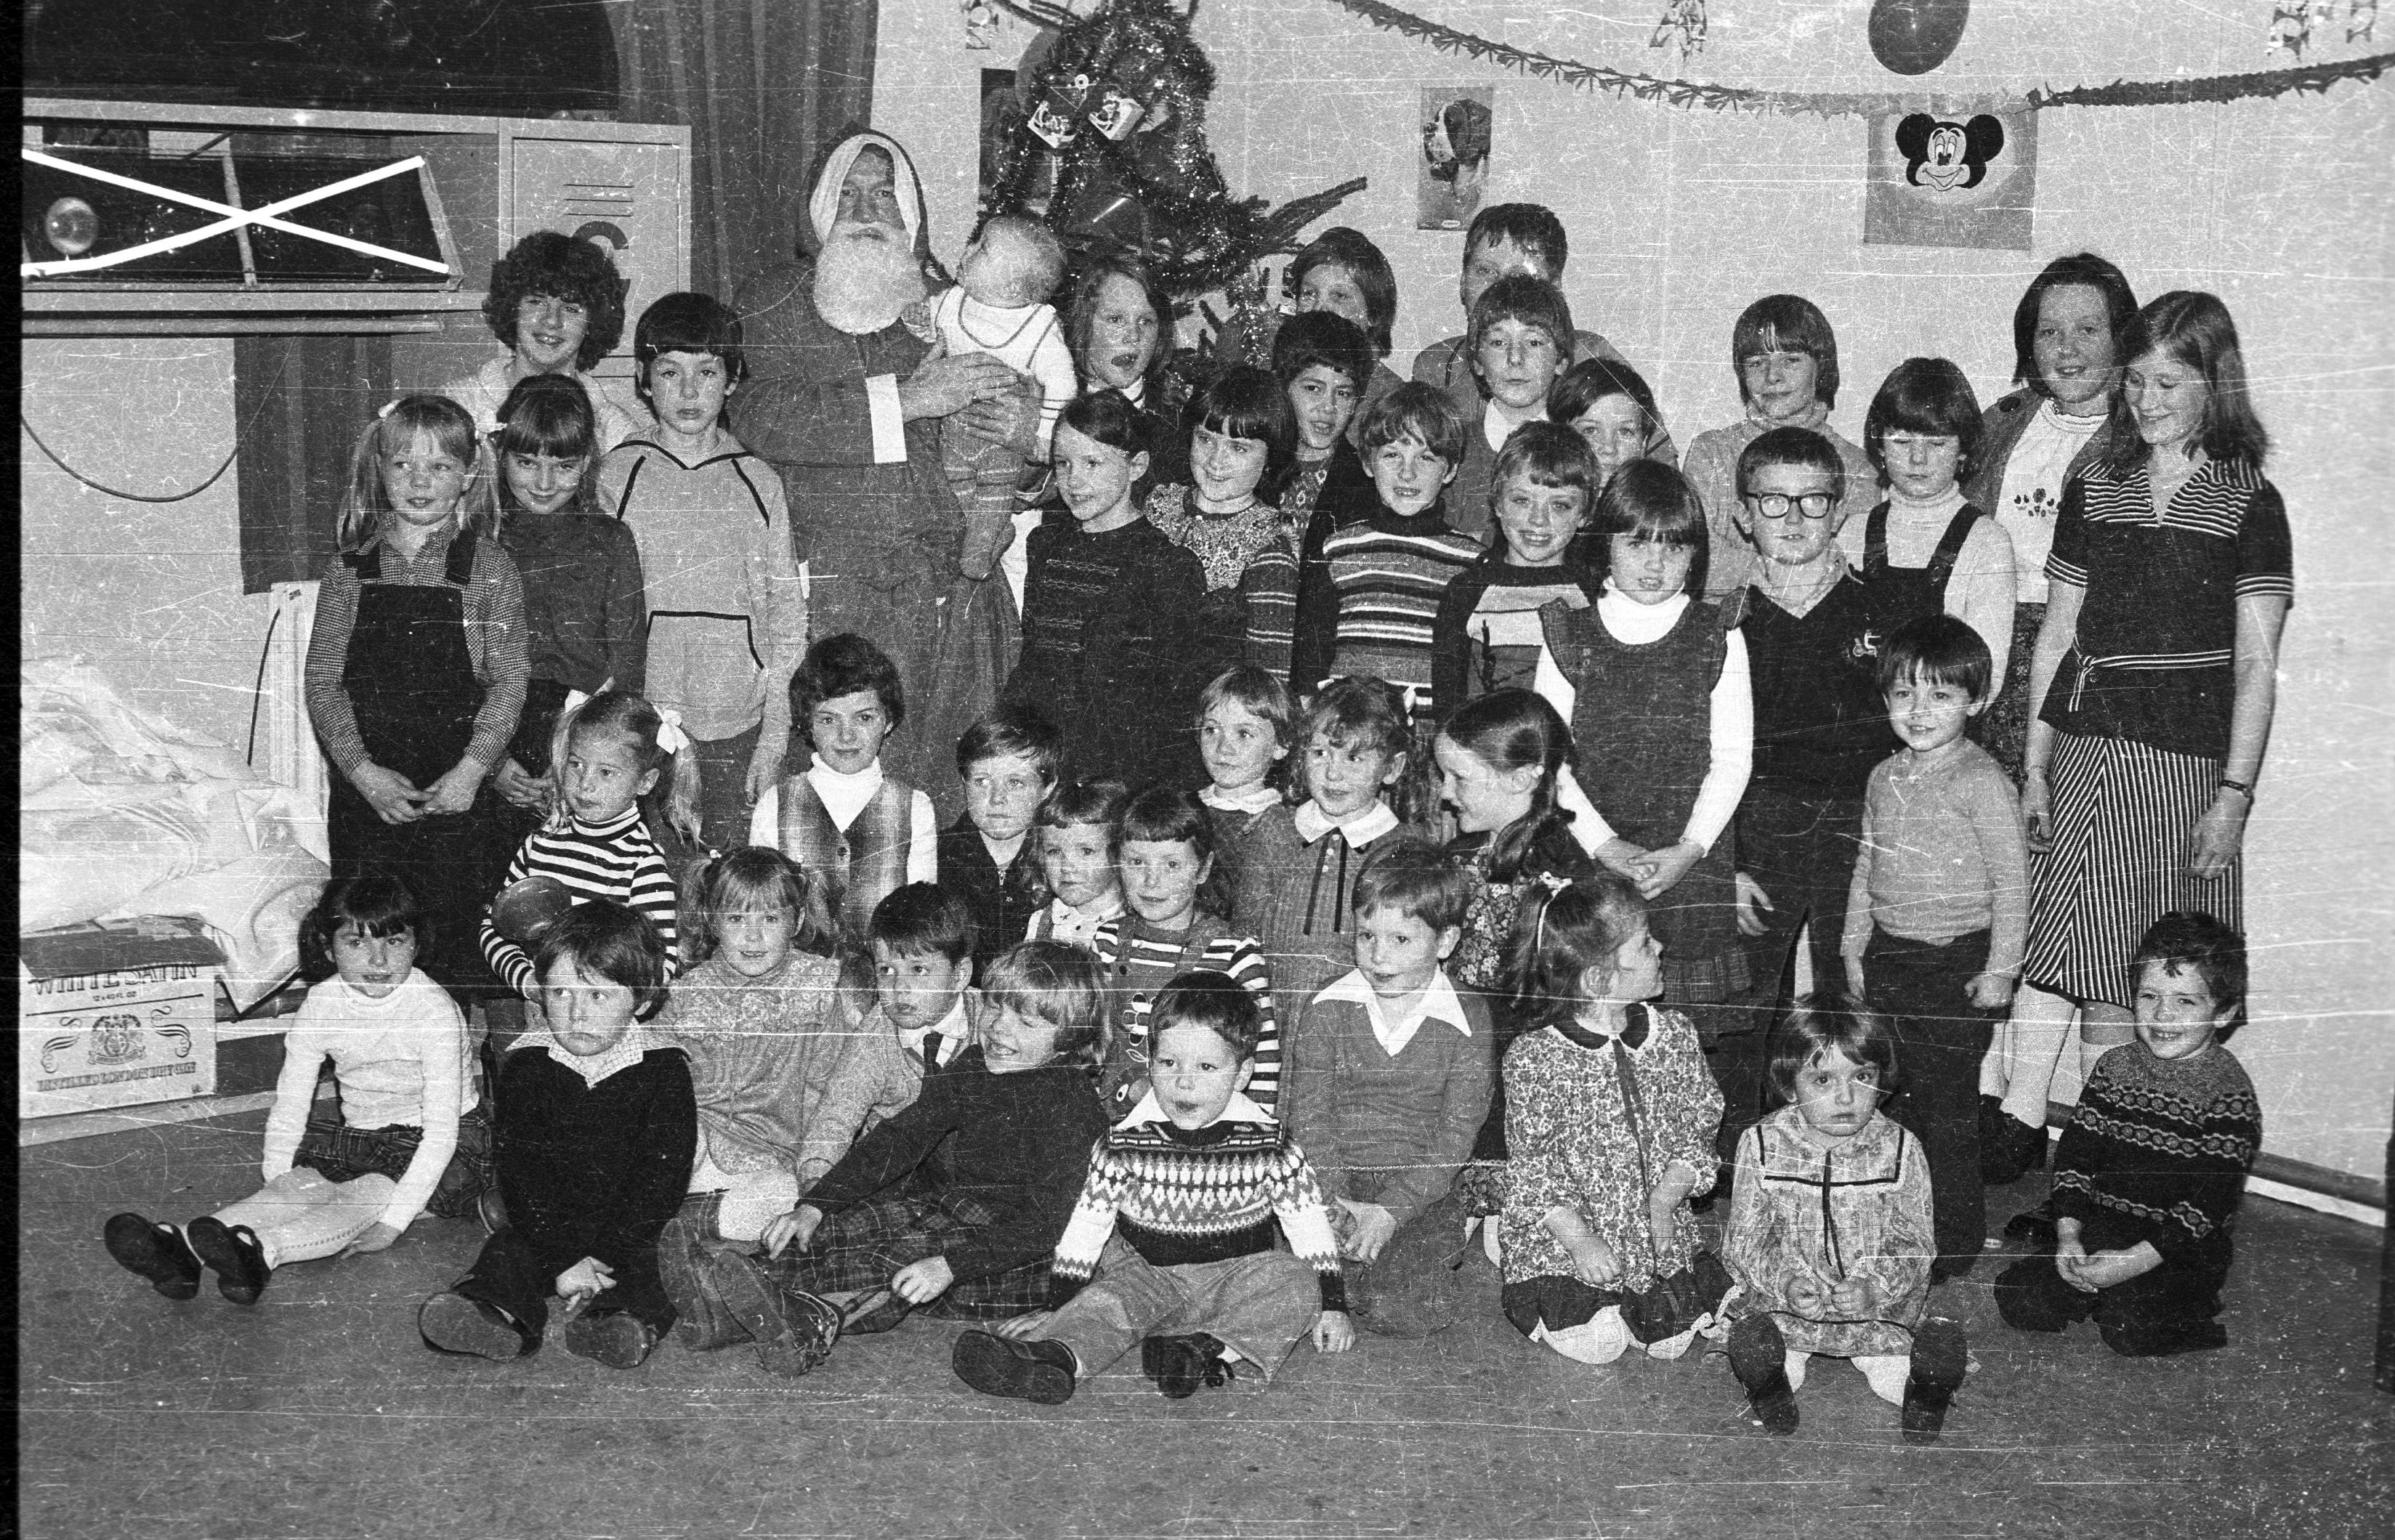 HO-HO-HO: Meeting Santa in Turf Lodge back in December 1979